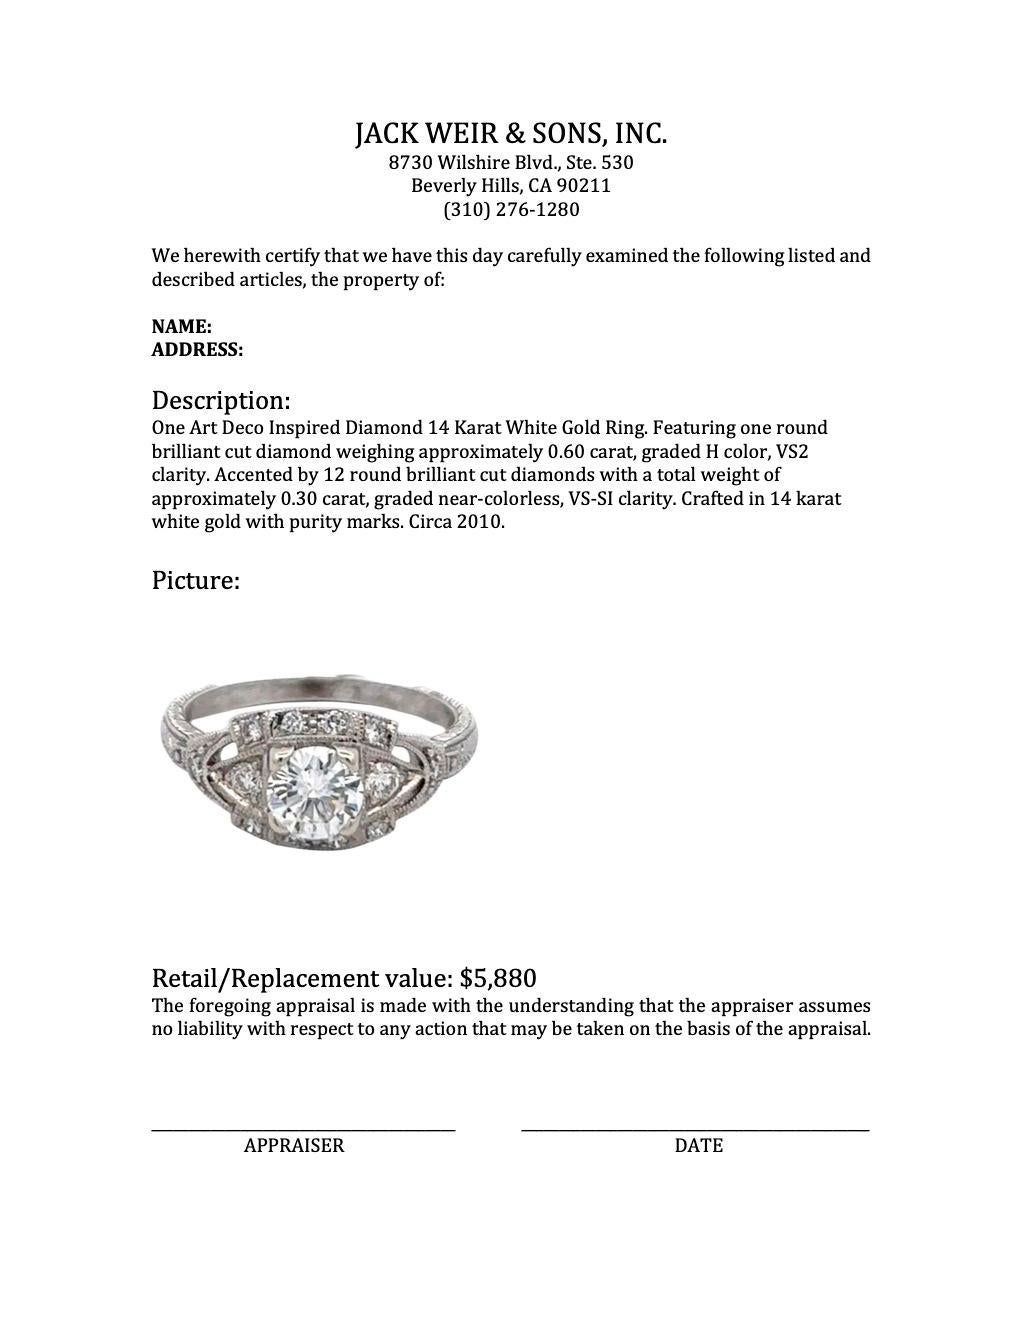 Art Deco Inspired Diamond 14 Karat White Gold Ring 2